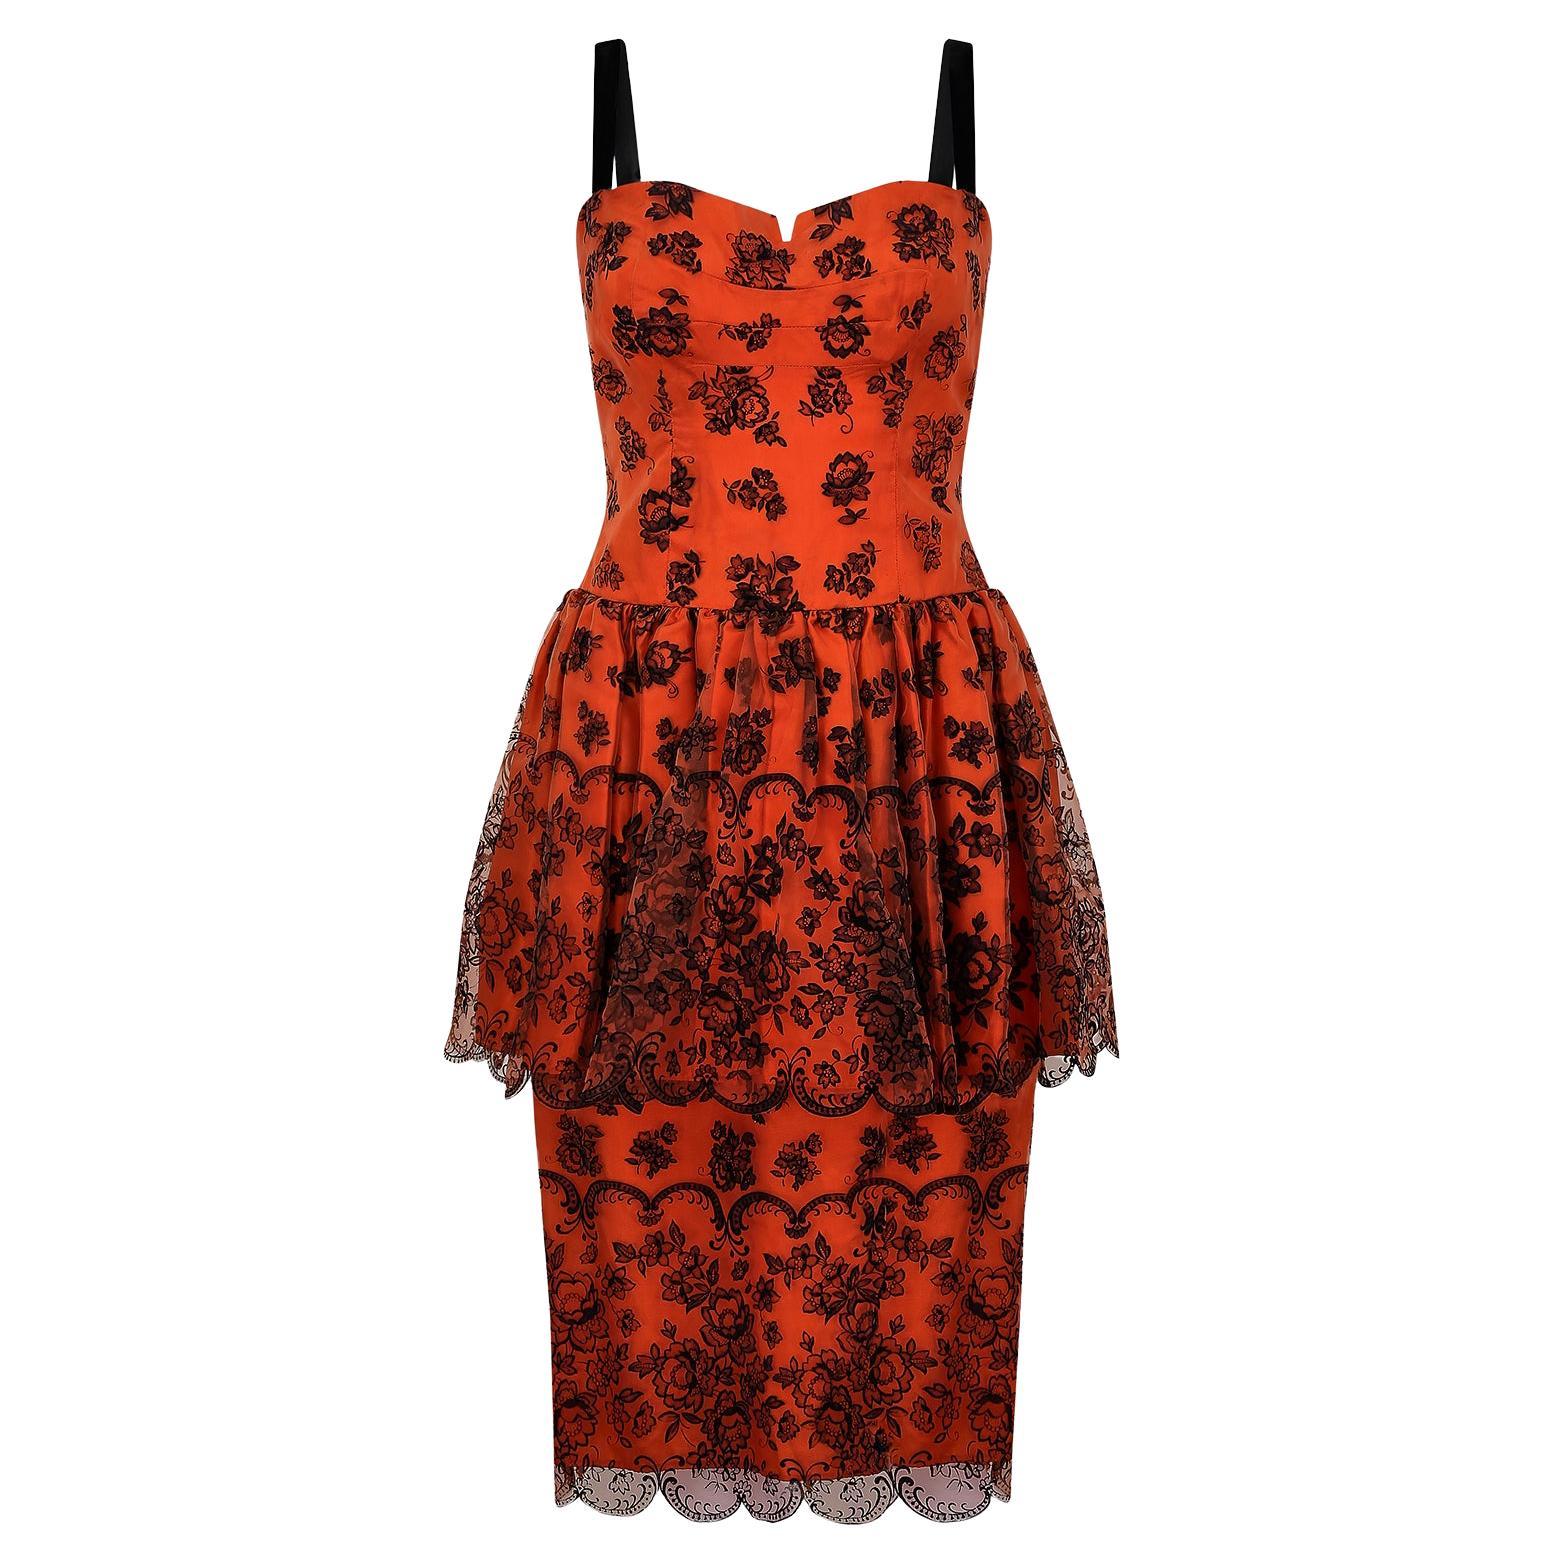 1960s Diana Floral Black and Orange Flock Print Dress For Sale